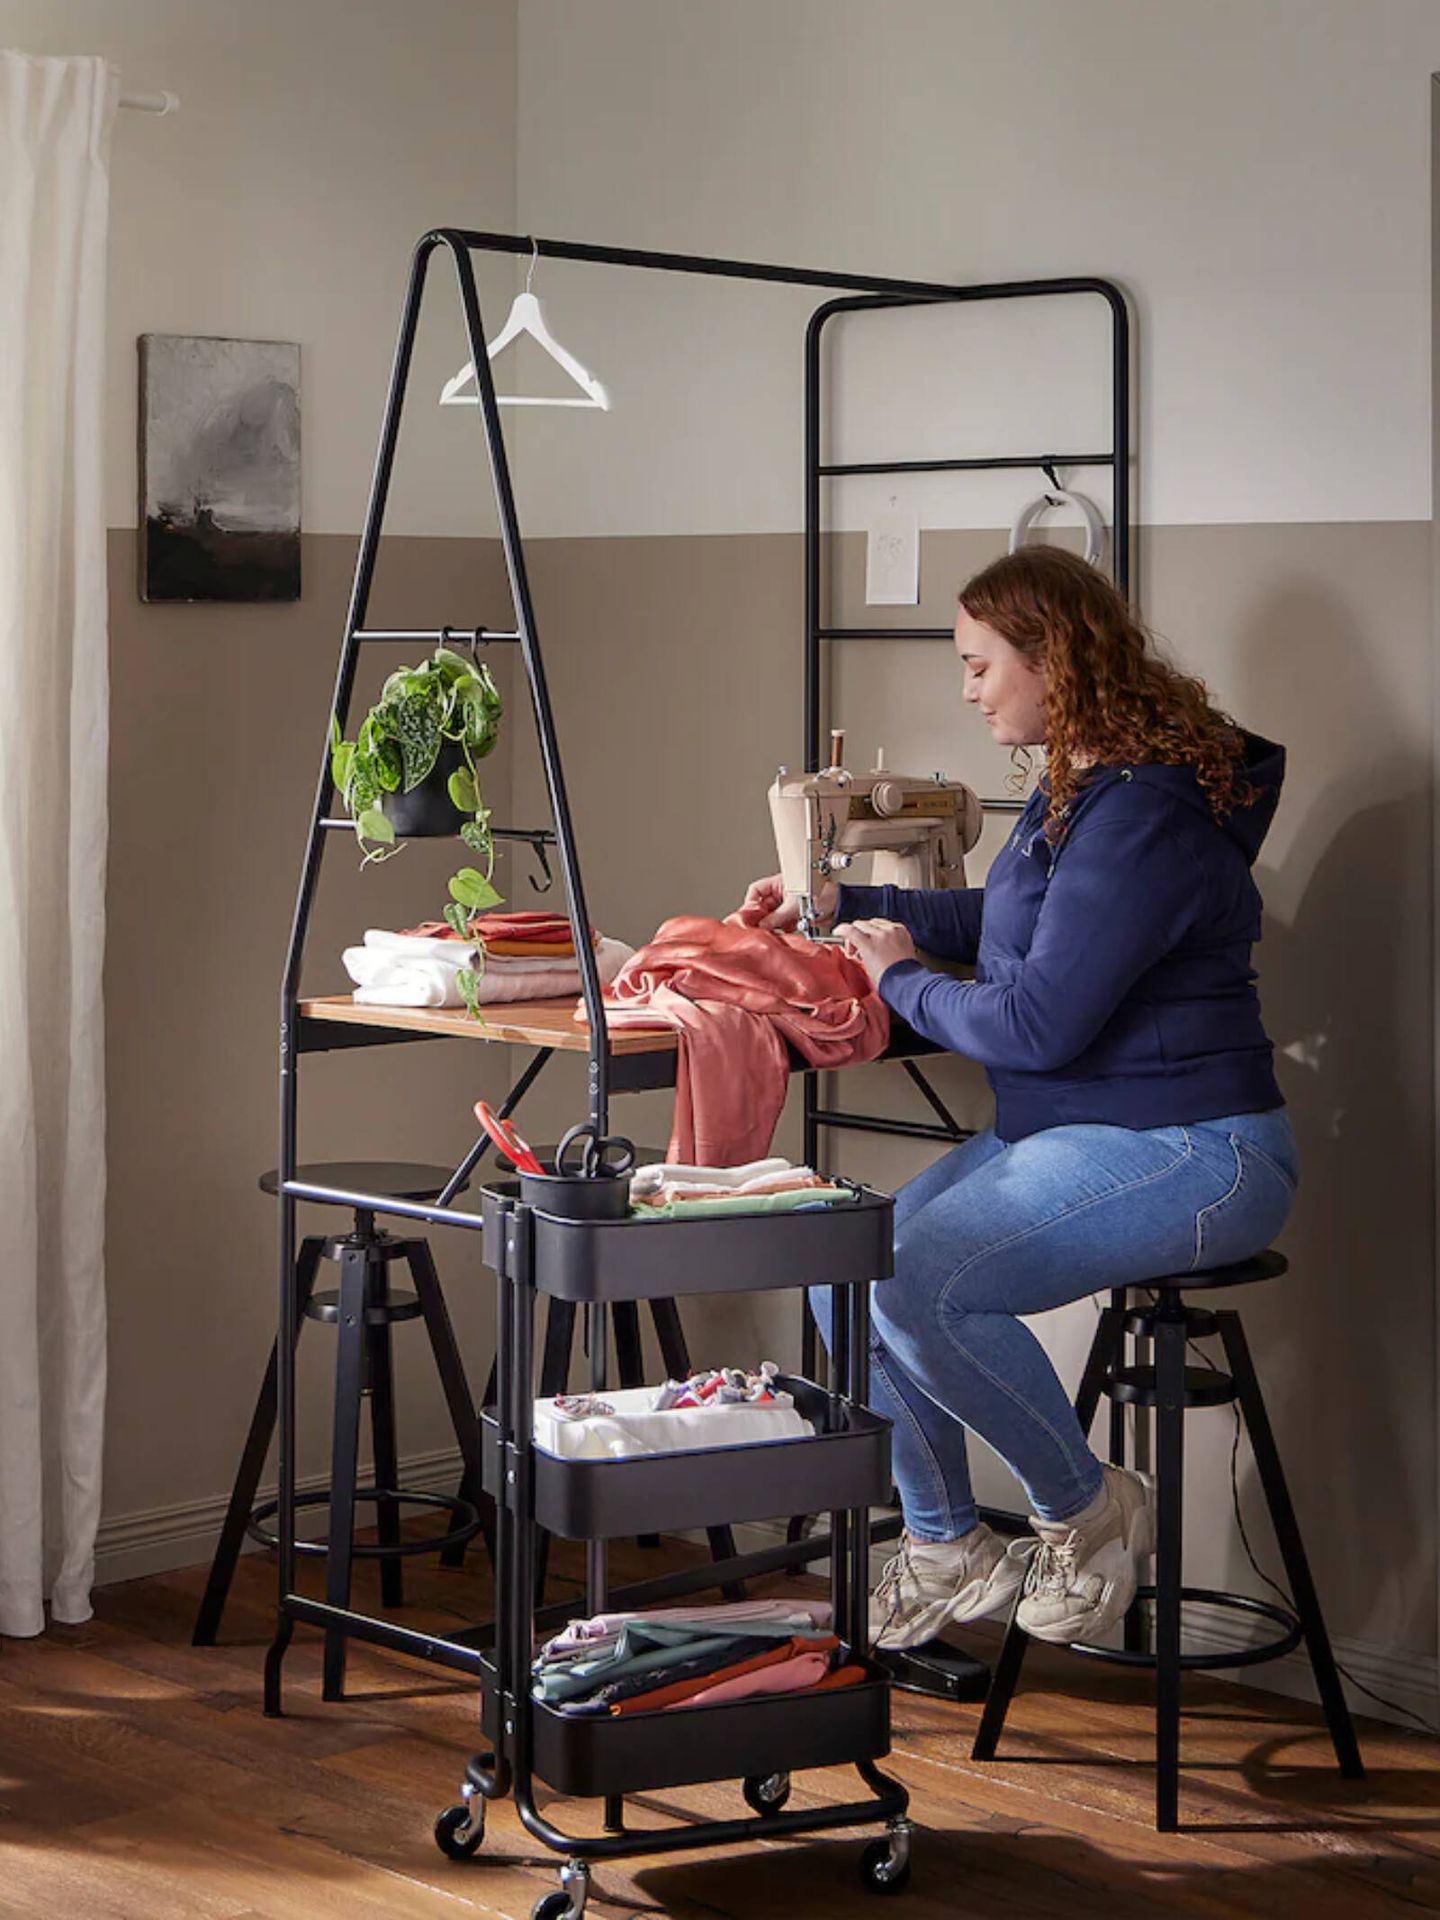 Nuevo mueble de Ikea para casas pequeñas. (Cortesía/Ikea)